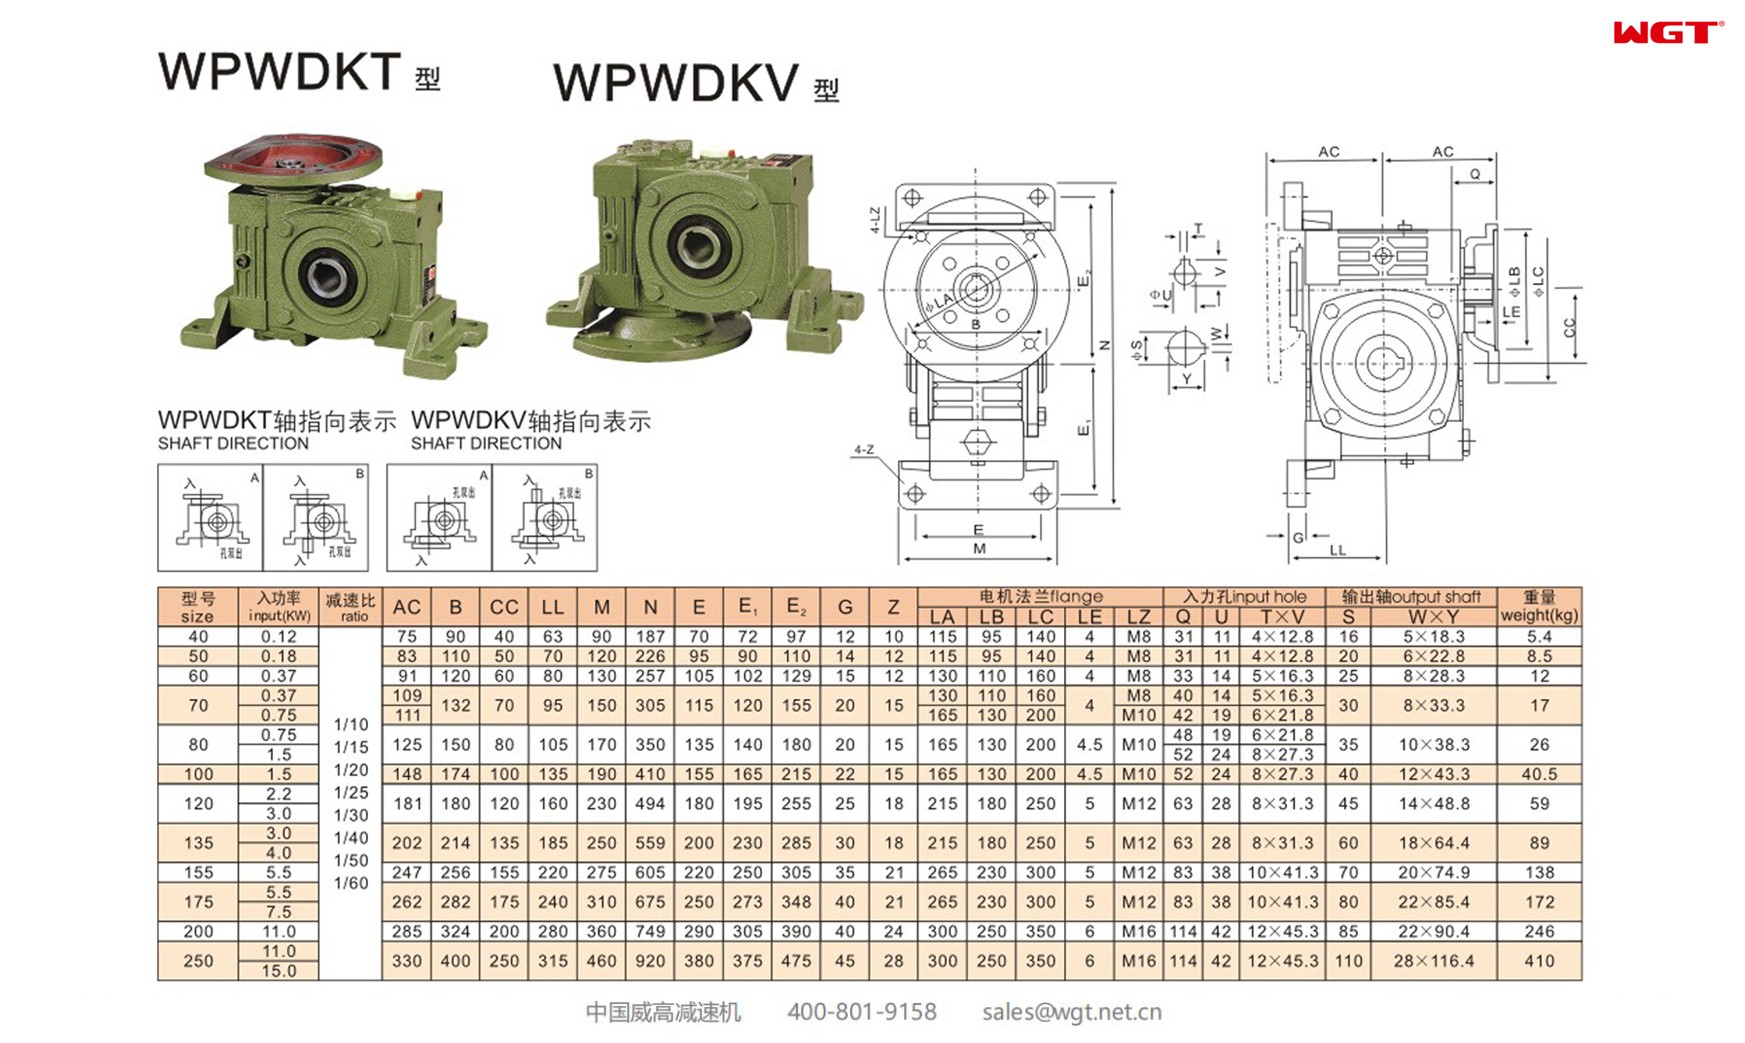 WPWDKV50 worm gear reducer universal speed reducer